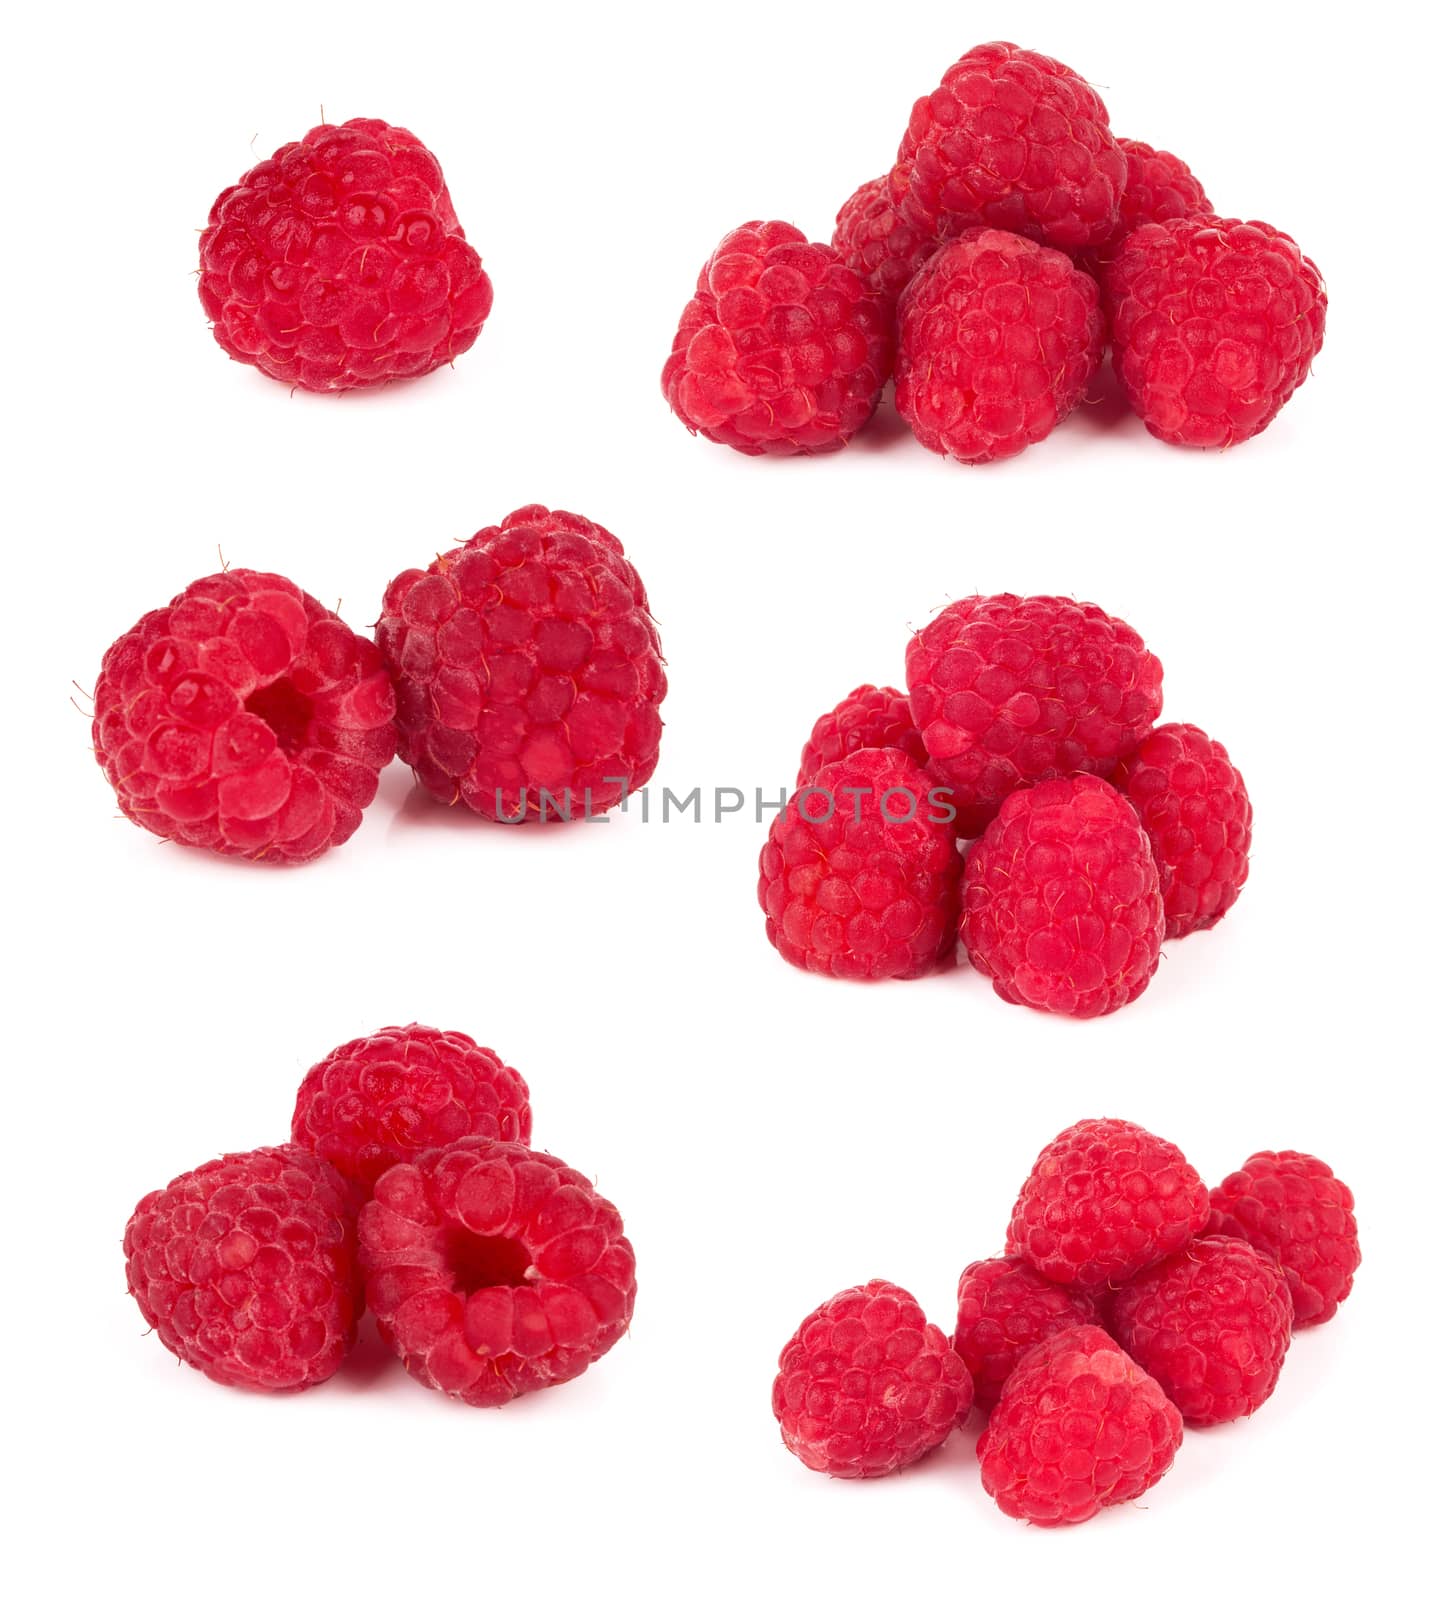 raspberries by pioneer111